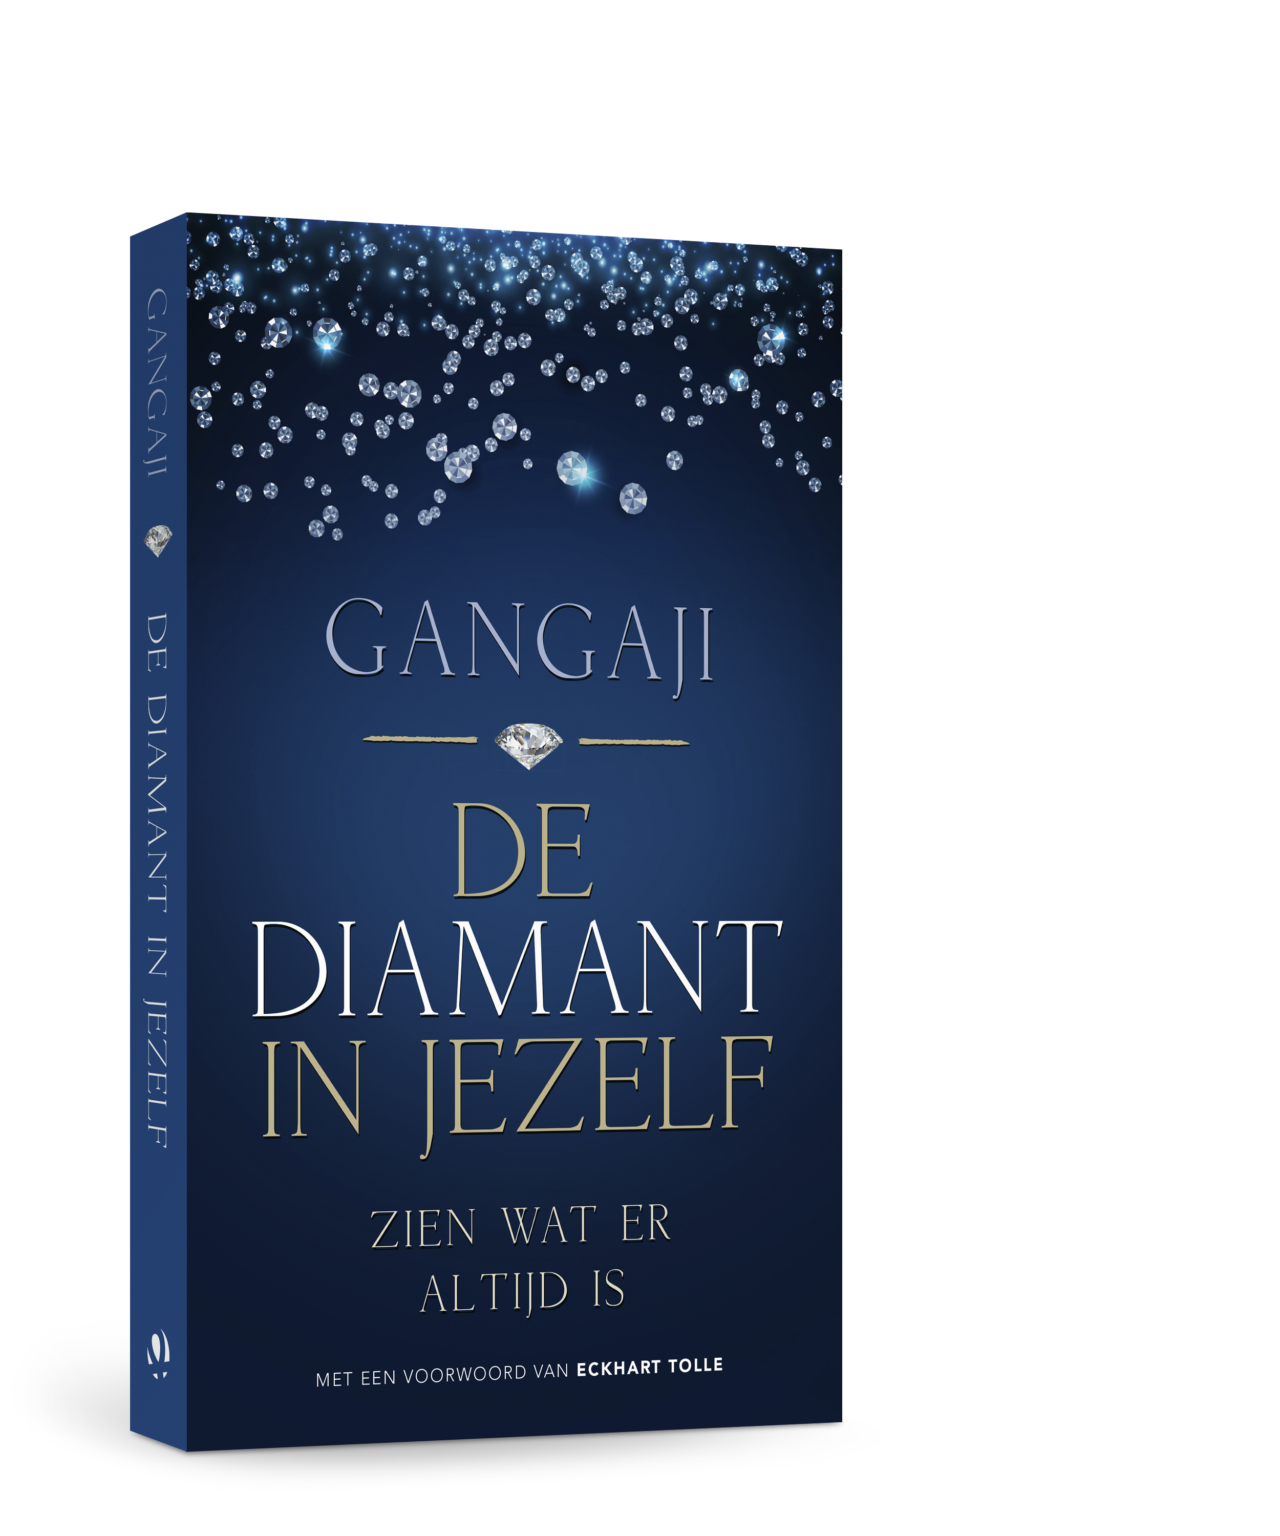 Op de afbeelding is een donkerblauwe kaft te zien, met bovenin glinsterende diamanten. In het midden van het omslag staat de titel van het boek.